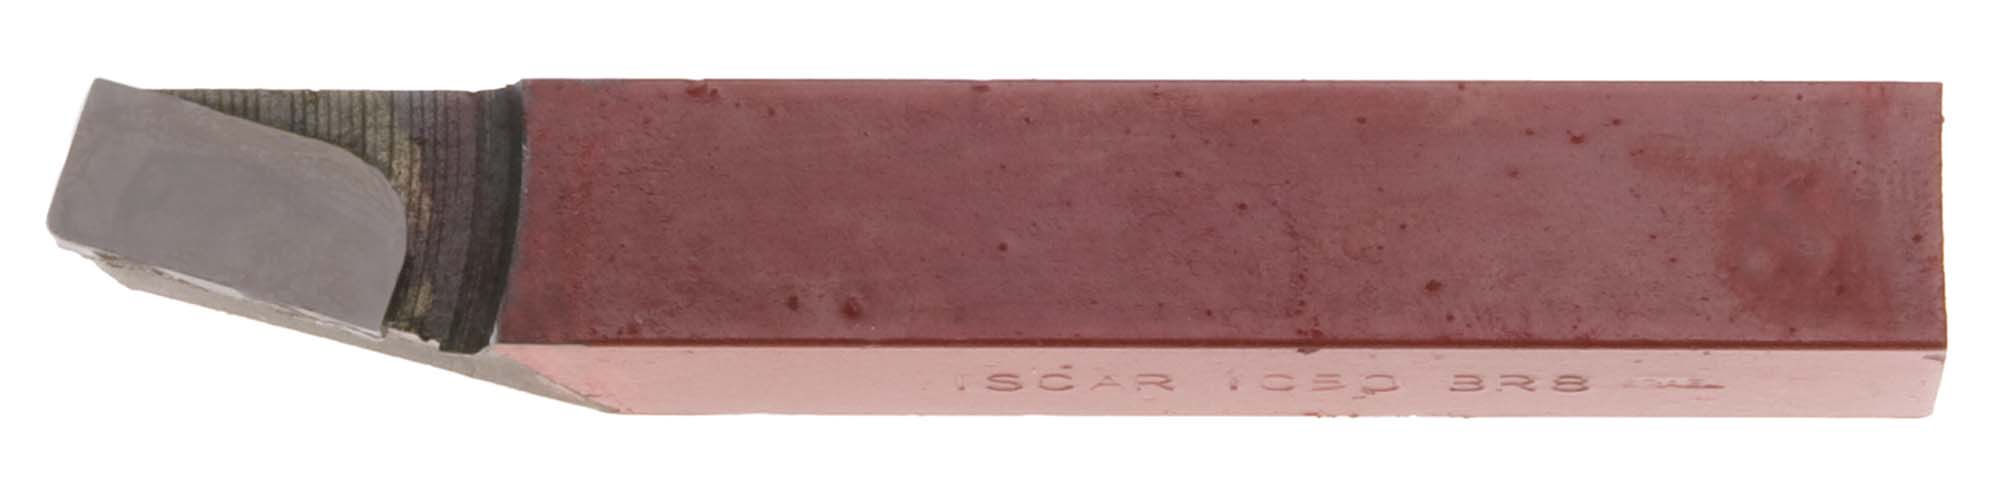 3/4" Square C Iscar Carbide Toolbit Grade IC50/C5